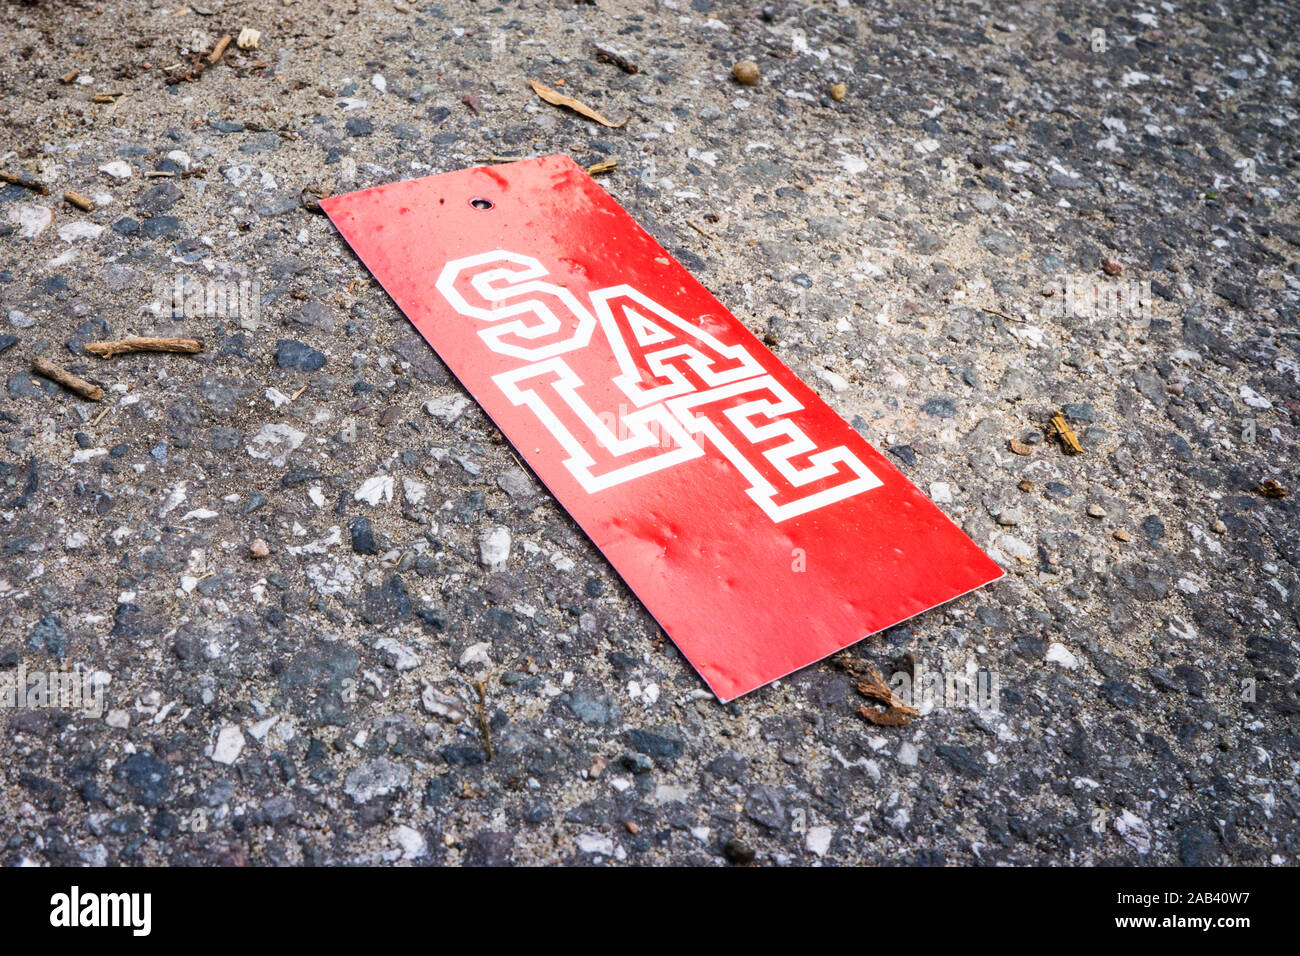 Ein rotes Pappschild mit der Aufschrift „Sale“ liegt auf einer Straße |A red cardboard sign with the word 'Sale' is located on a street| Stock Photo